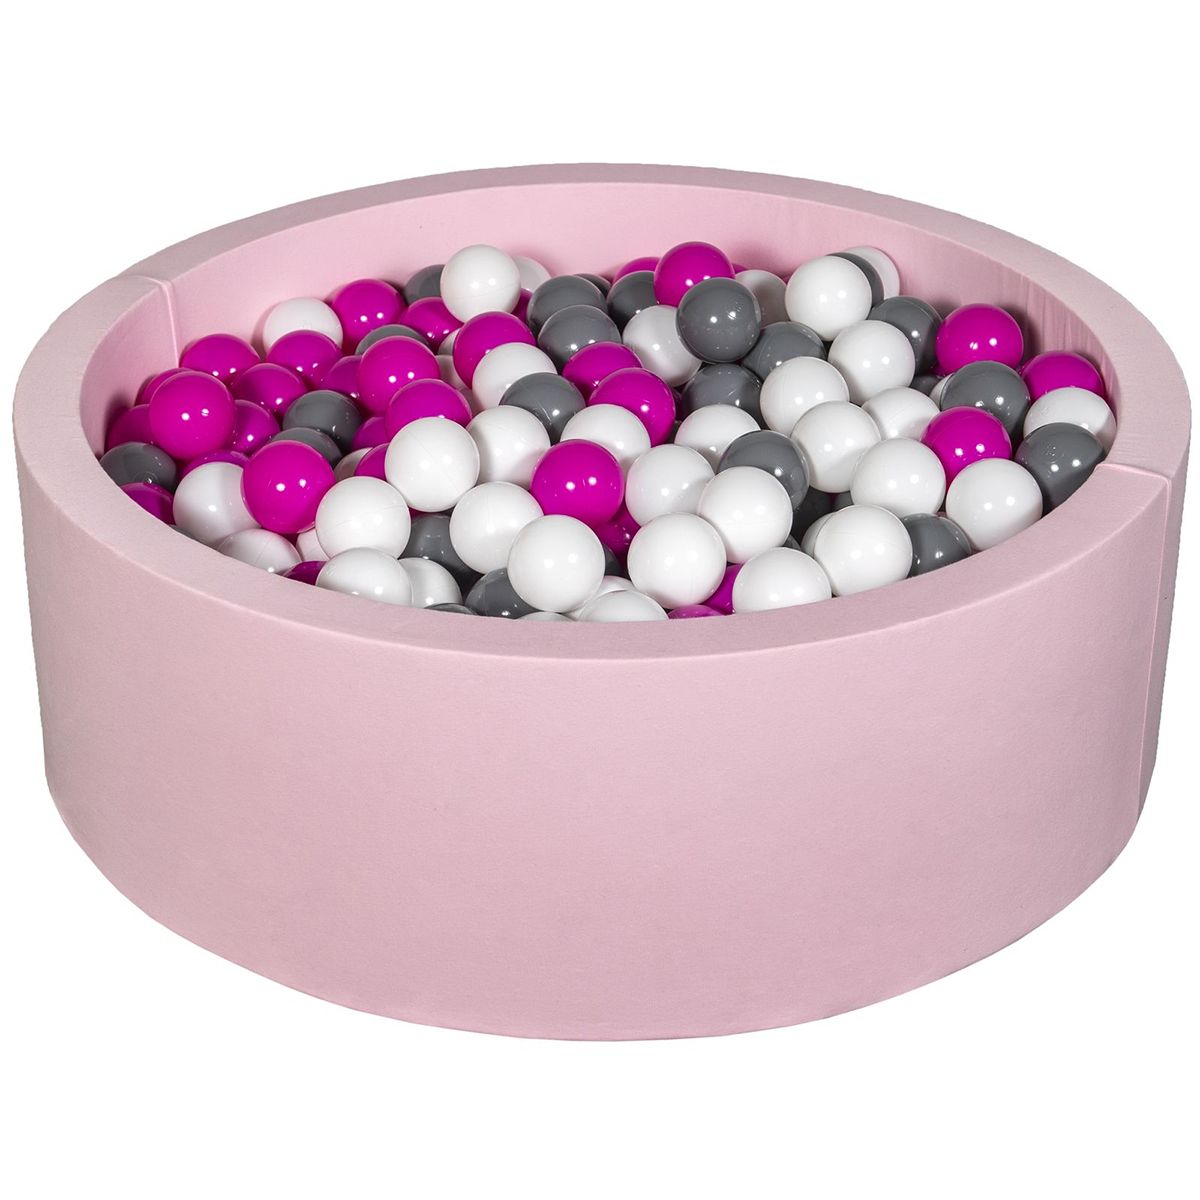  Piscine à balles Aire de jeu + 450 balles rose blanc,rose,gris